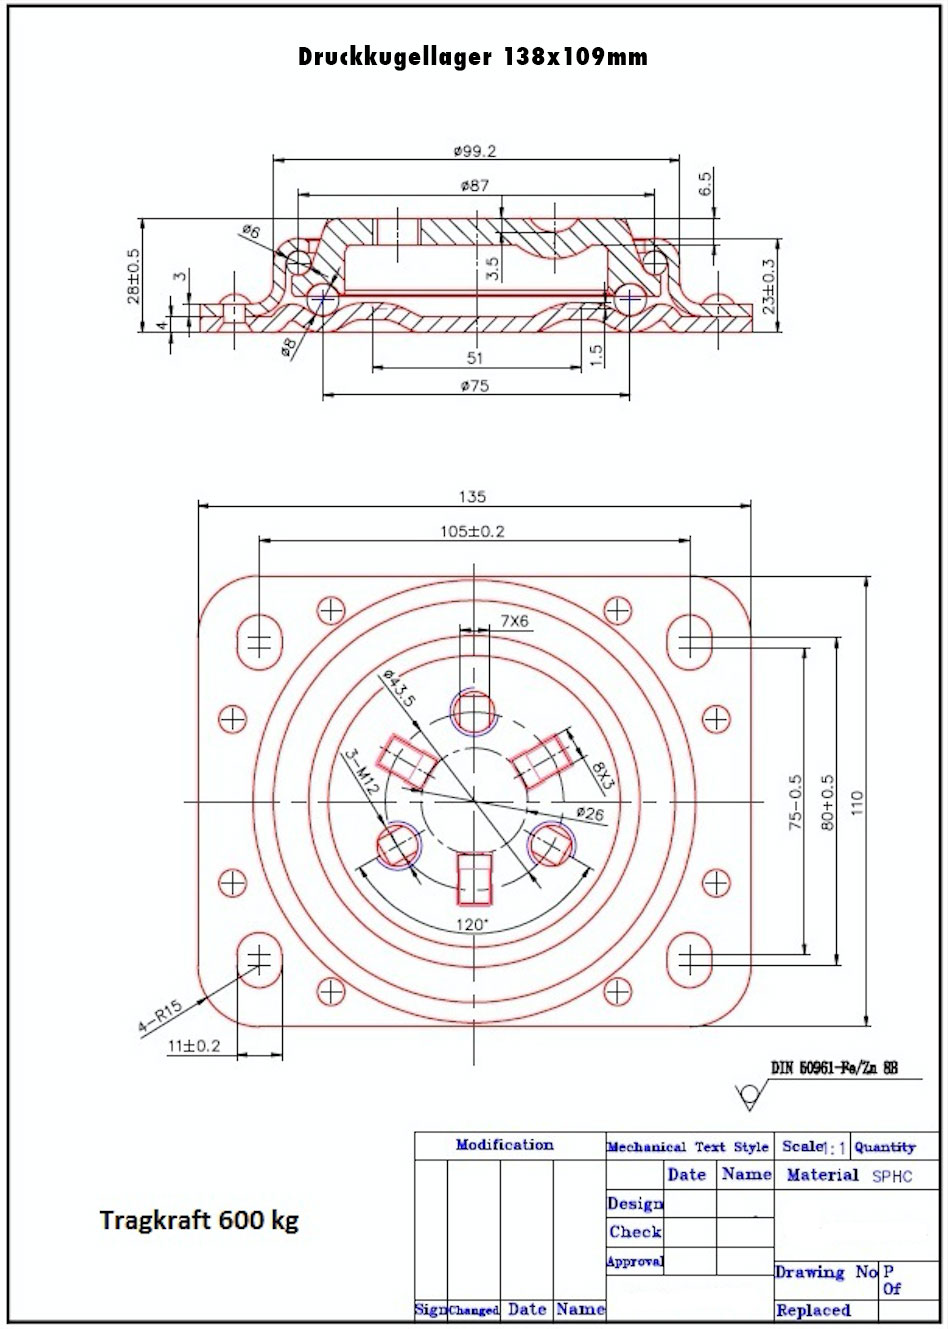 Technische Zeichnung für zweireihiges Druckkugellager (Axialkugellager) ohne Mittelbolzen Tragkraft 600 kg